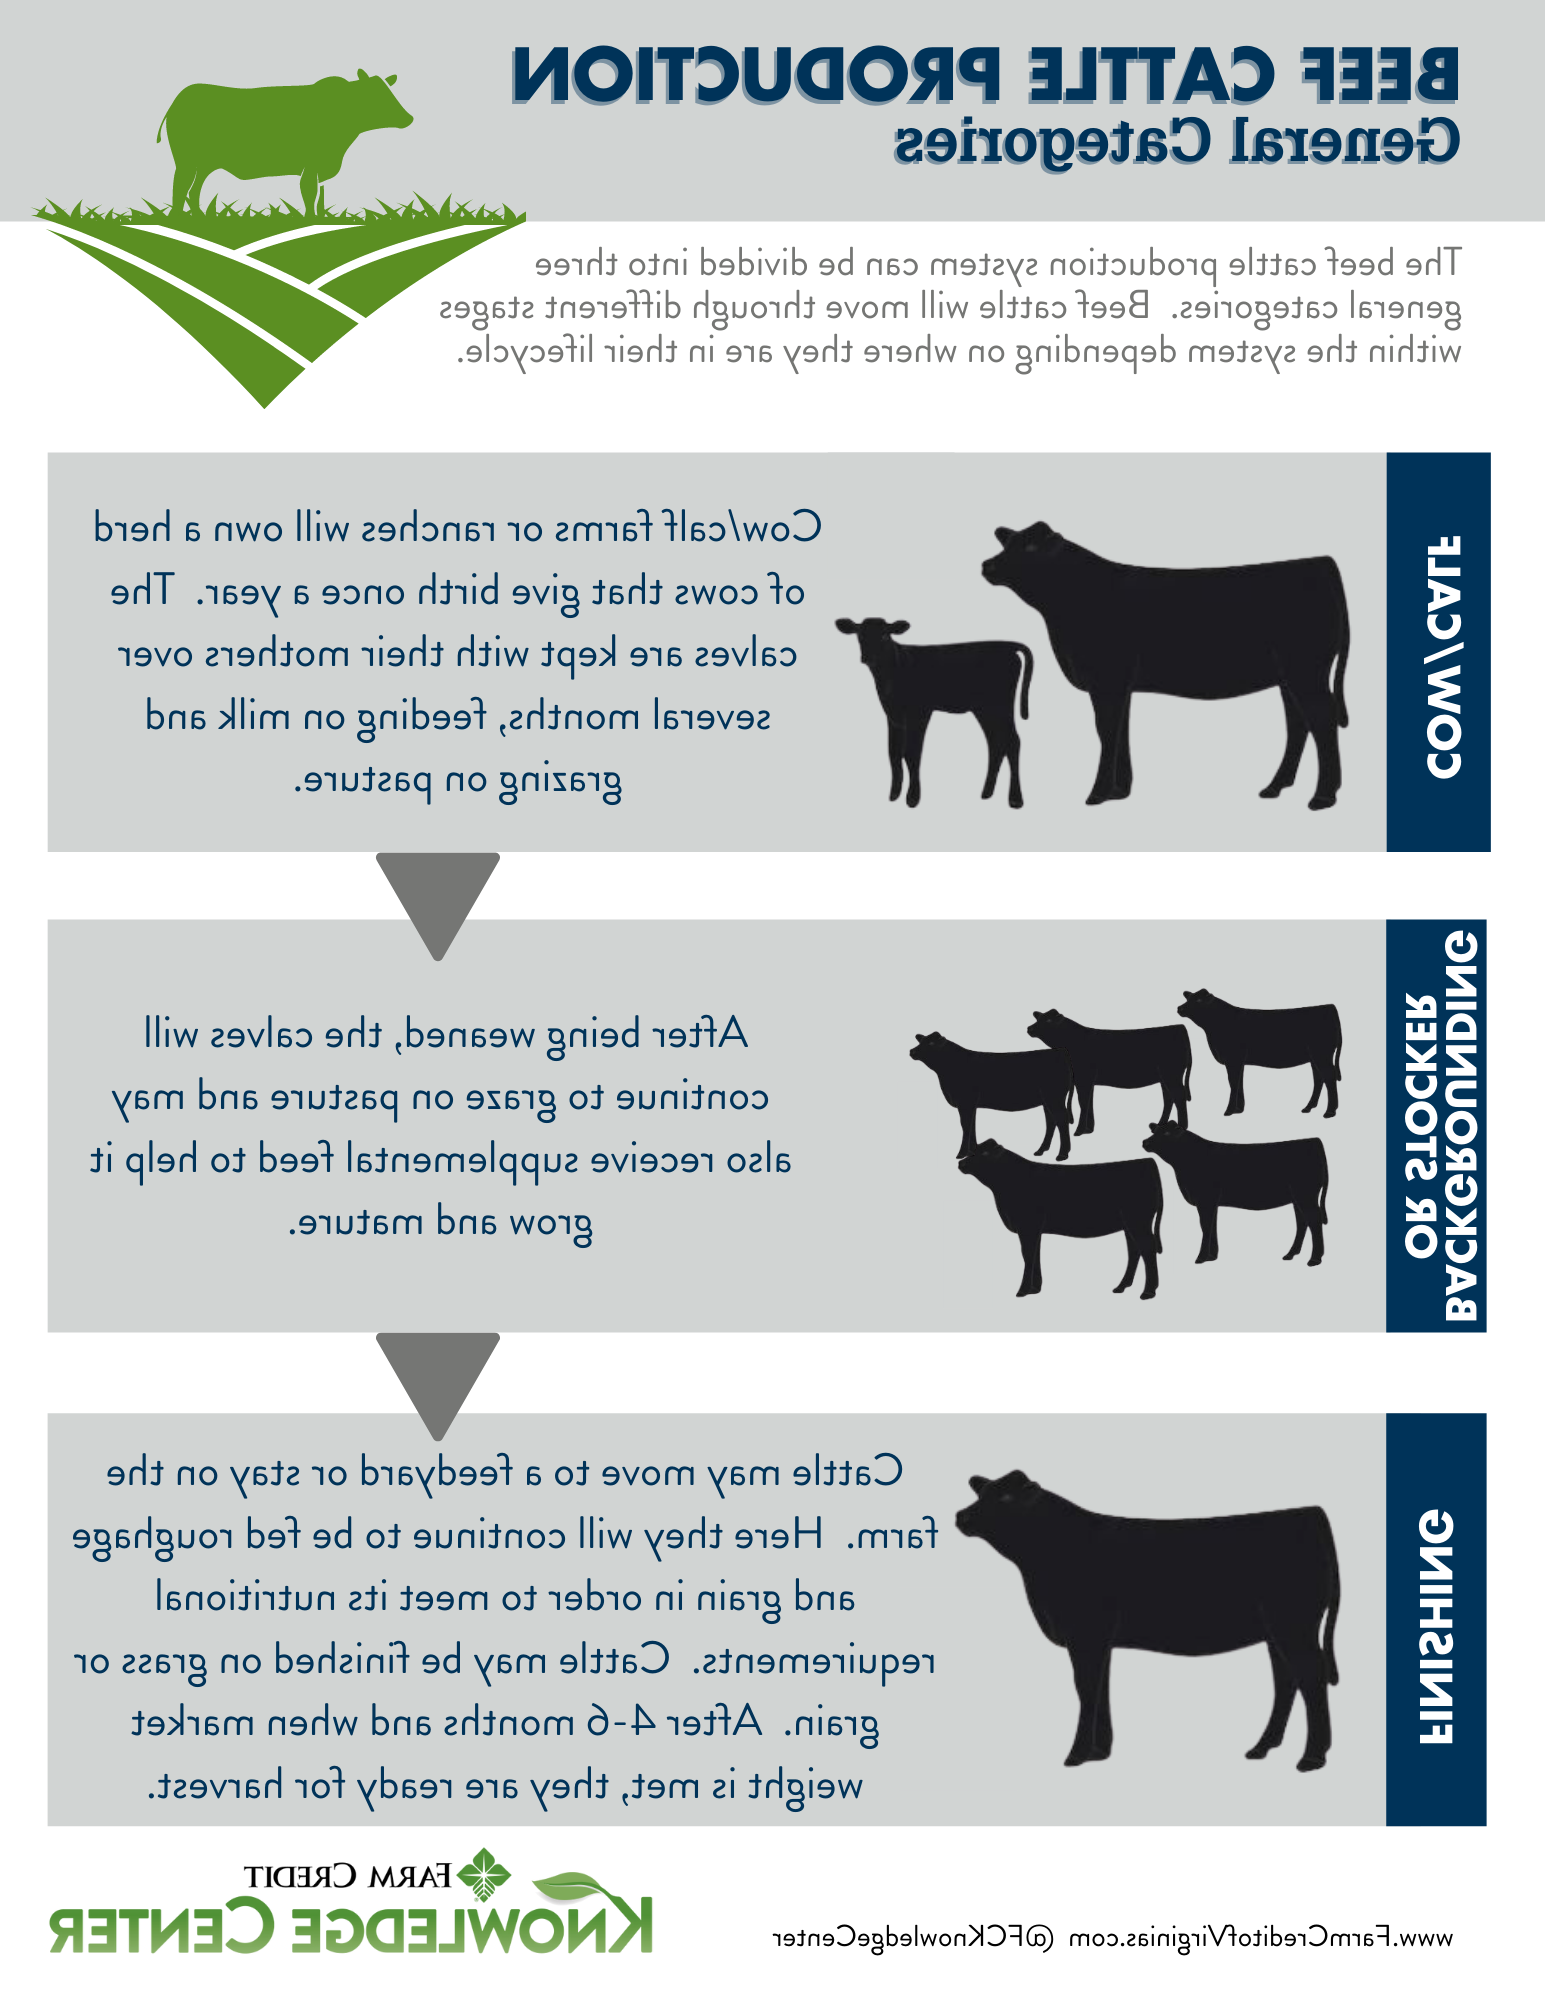 动物农业、肉牛生产和肉牛生命周期图像信息图